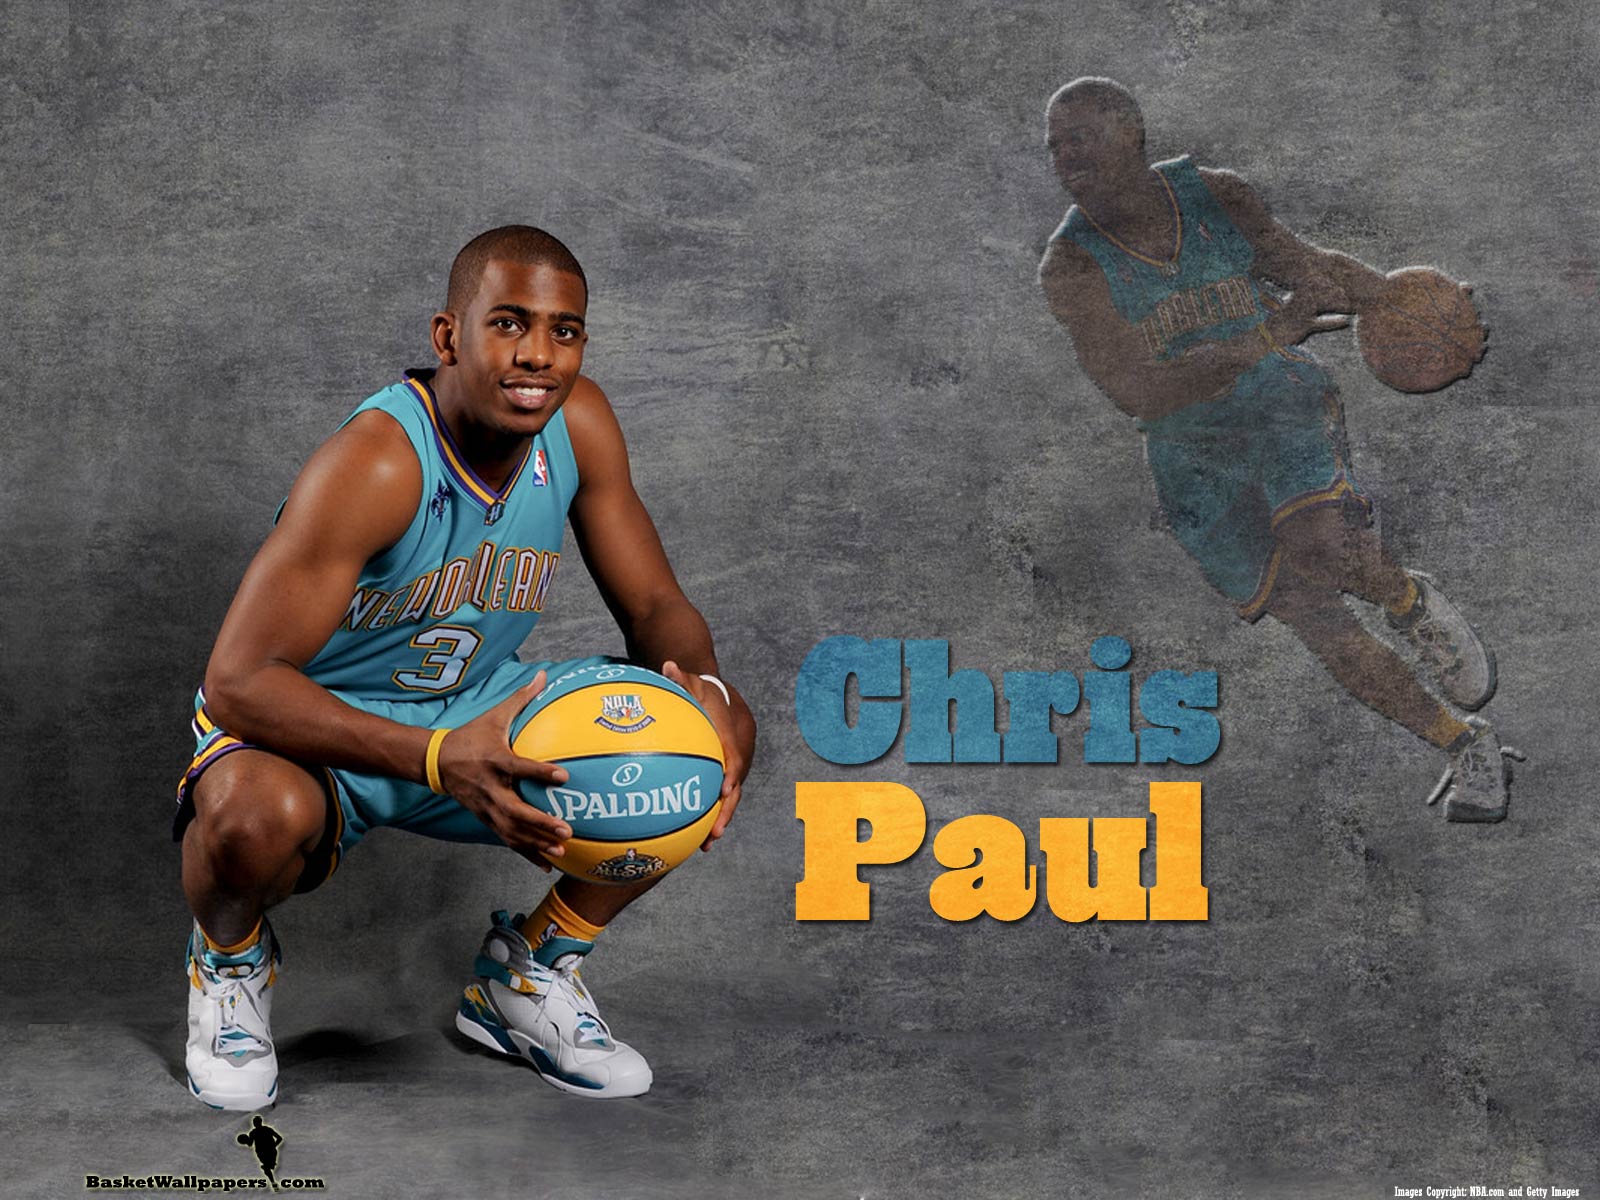 クリス・ポール壁紙,バスケットボール選手,バスケットボール,バスケットボールの動き,バスケットボール,スポーツ